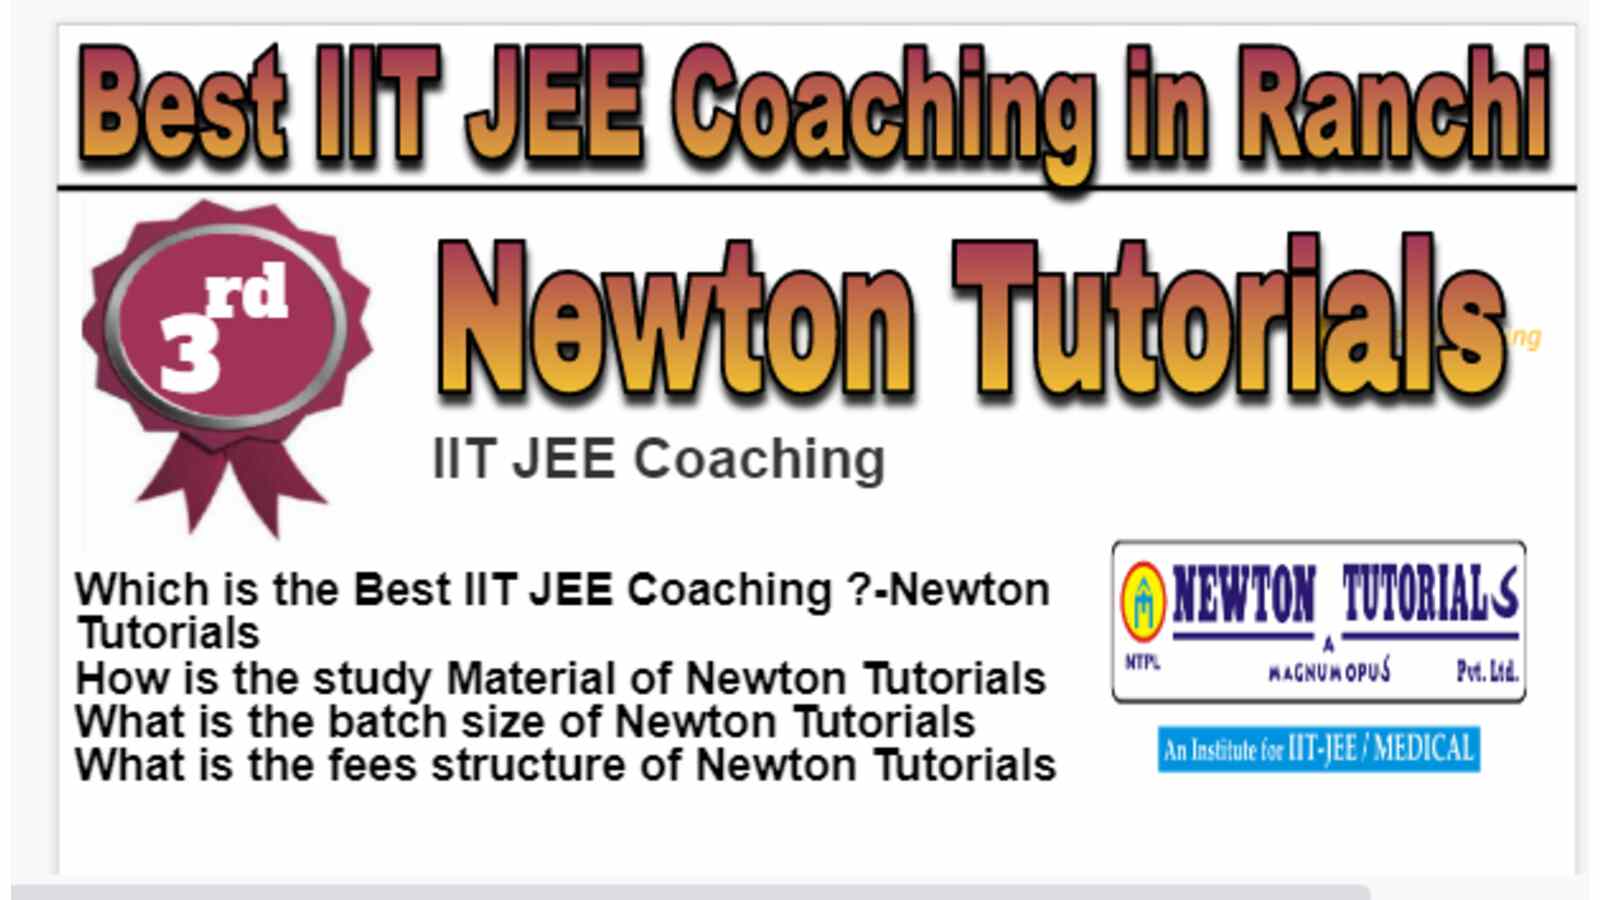 Rank 3 Best IIT JEE Coaching in Ranchi